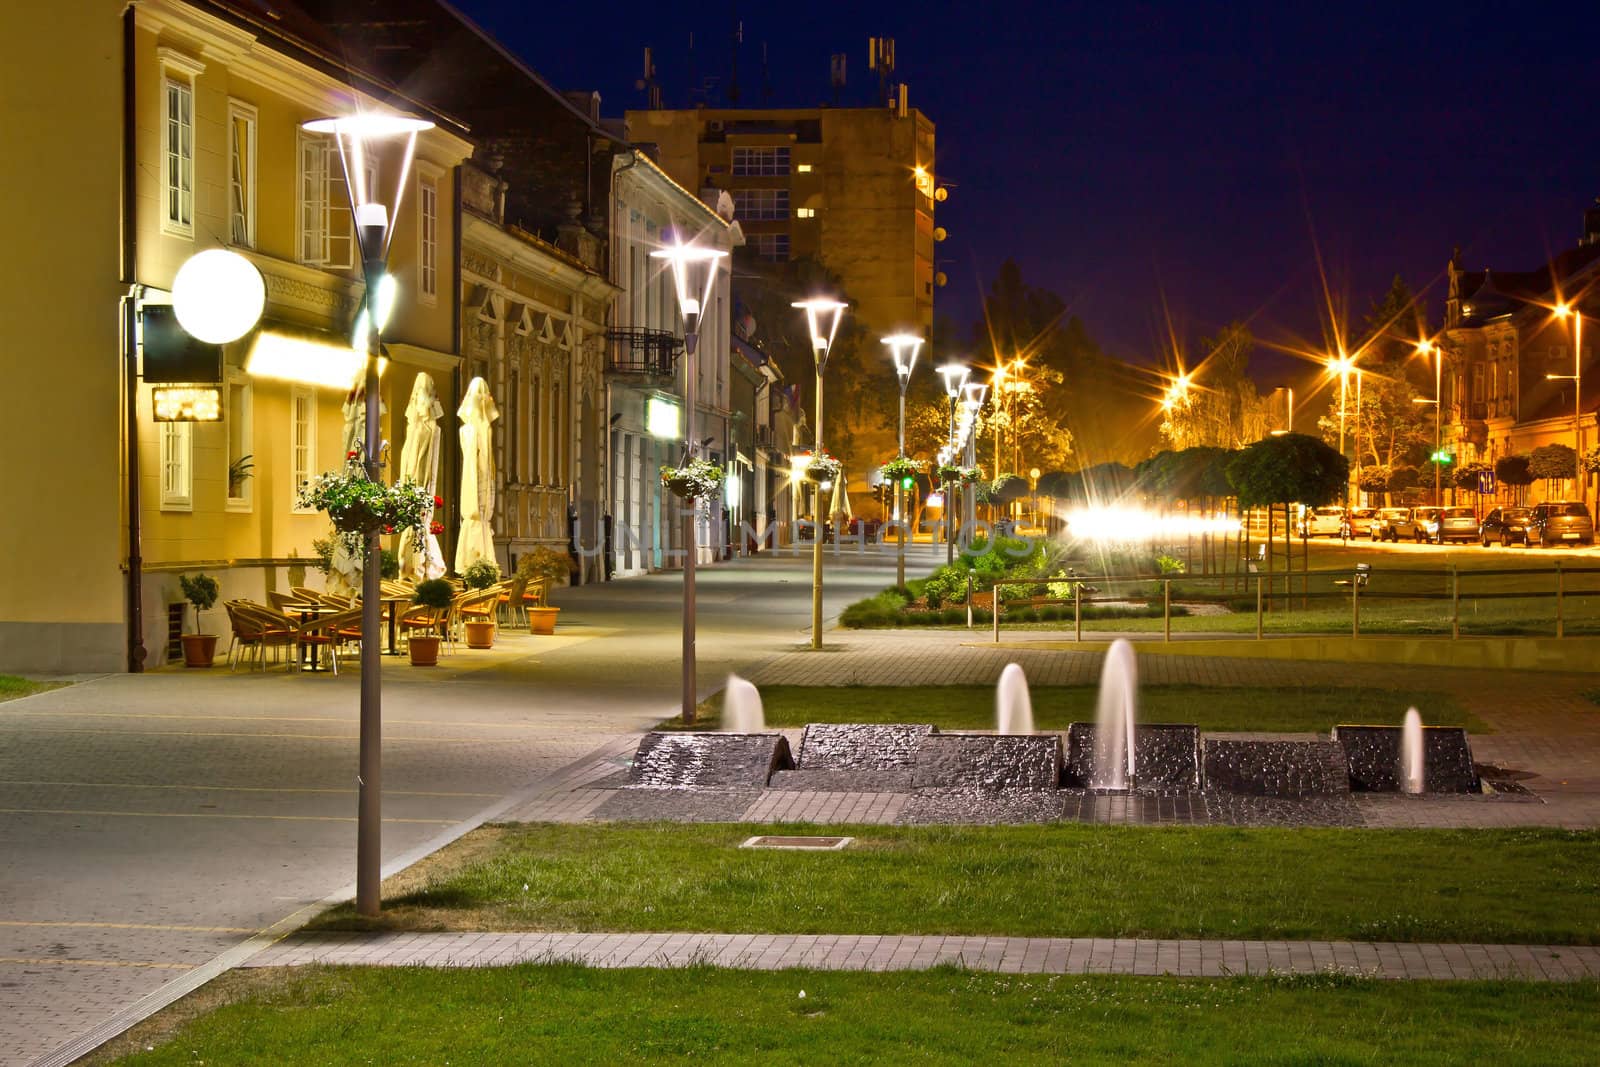 Town of Krizevci walkway night scene by xbrchx